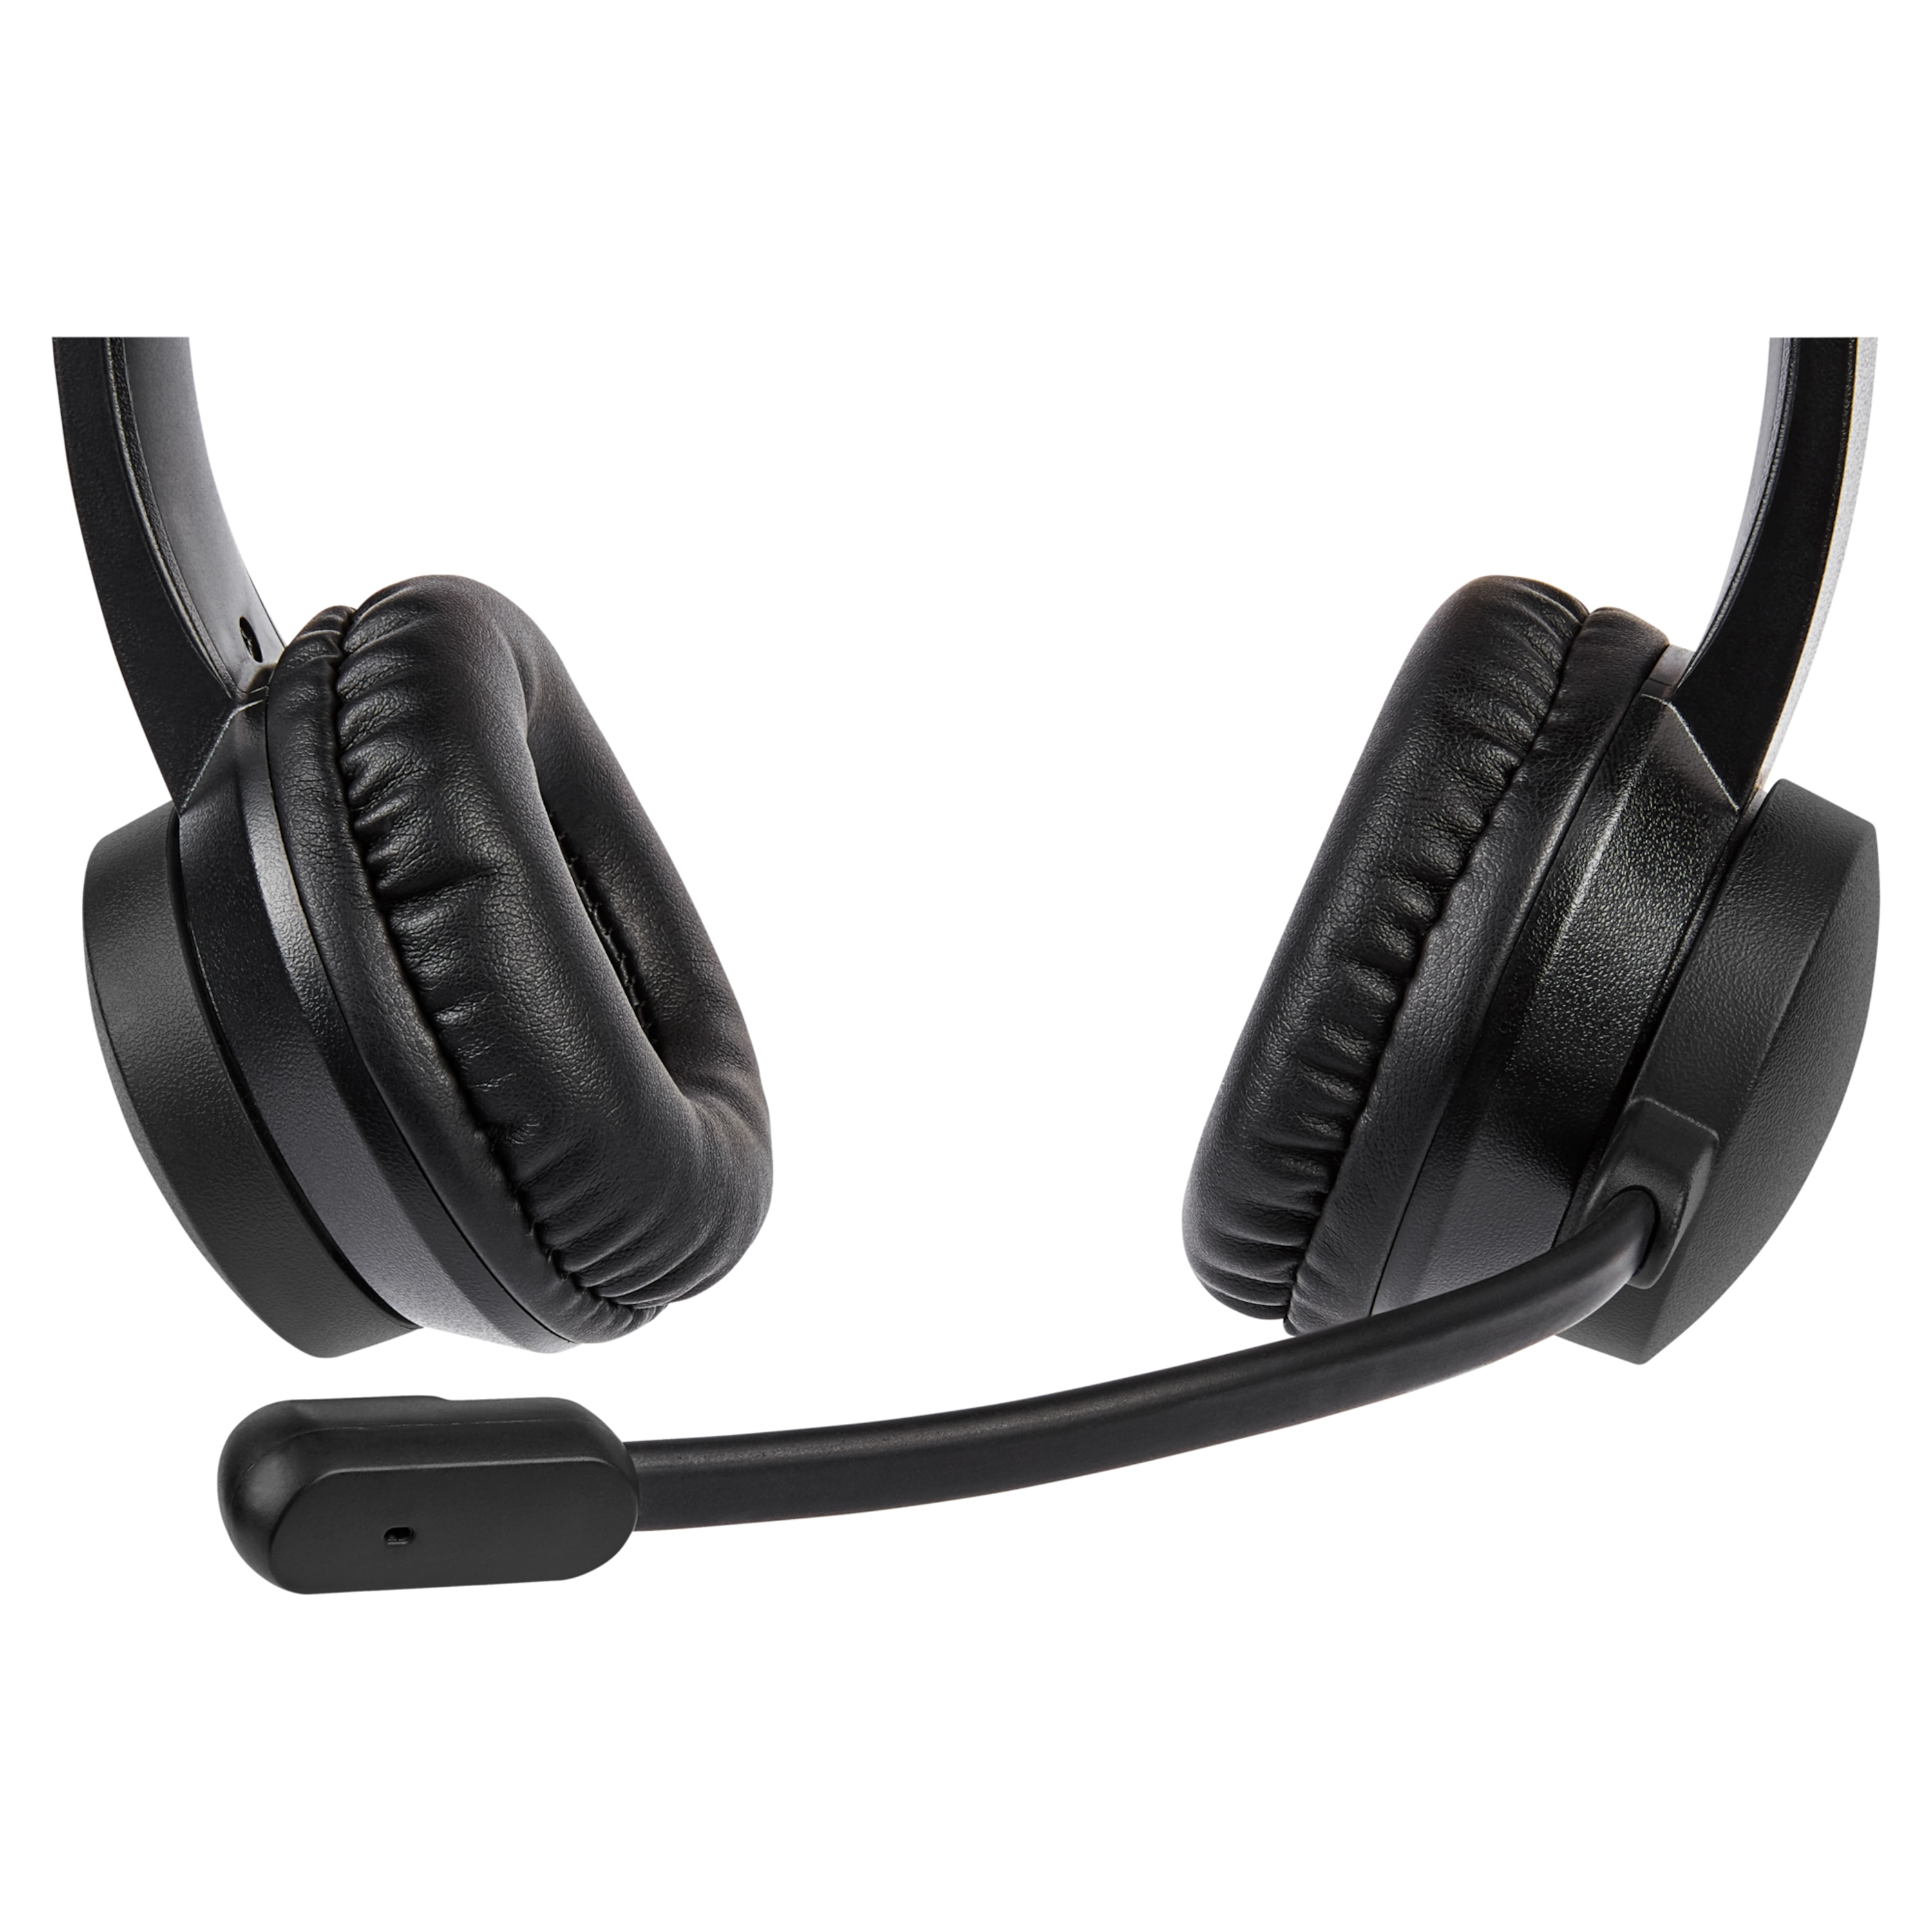 MEDION® LIFE® E83265 USB-Headset, Stereo Kopfhörer für ein perfektes Klangerlebnis, integriertes Mikrofon mit glasklarer Tonaufnahme, pratkischer Lautstärkeregler am Kabel, leicht und bequem, Plug & Play, für PCs und Notebooks